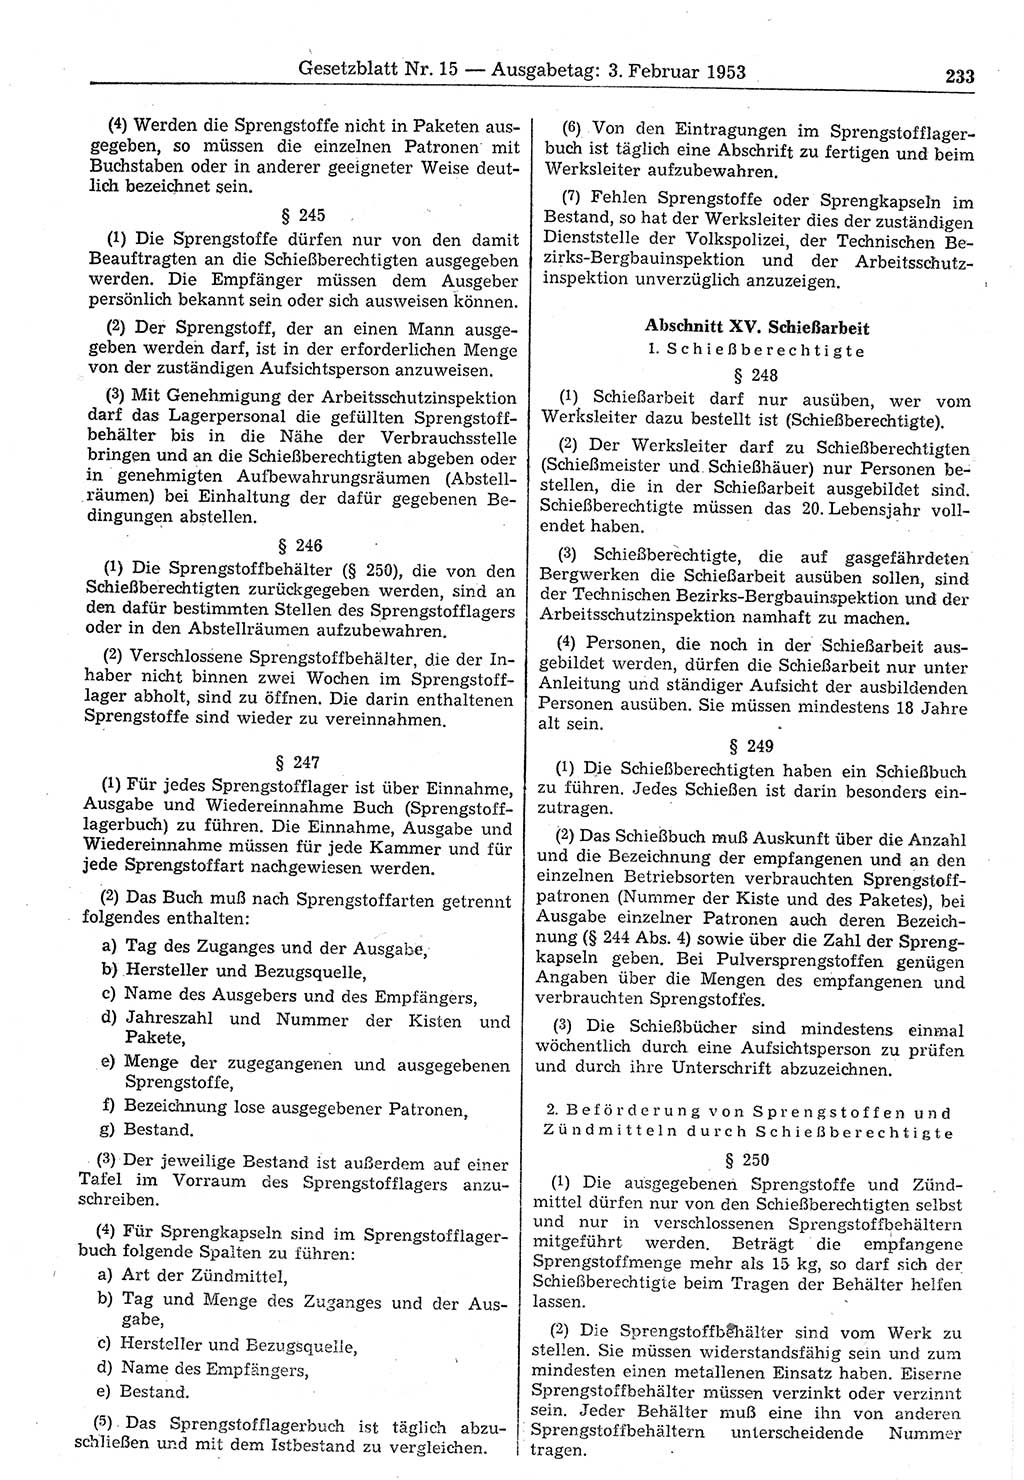 Gesetzblatt (GBl.) der Deutschen Demokratischen Republik (DDR) 1953, Seite 233 (GBl. DDR 1953, S. 233)